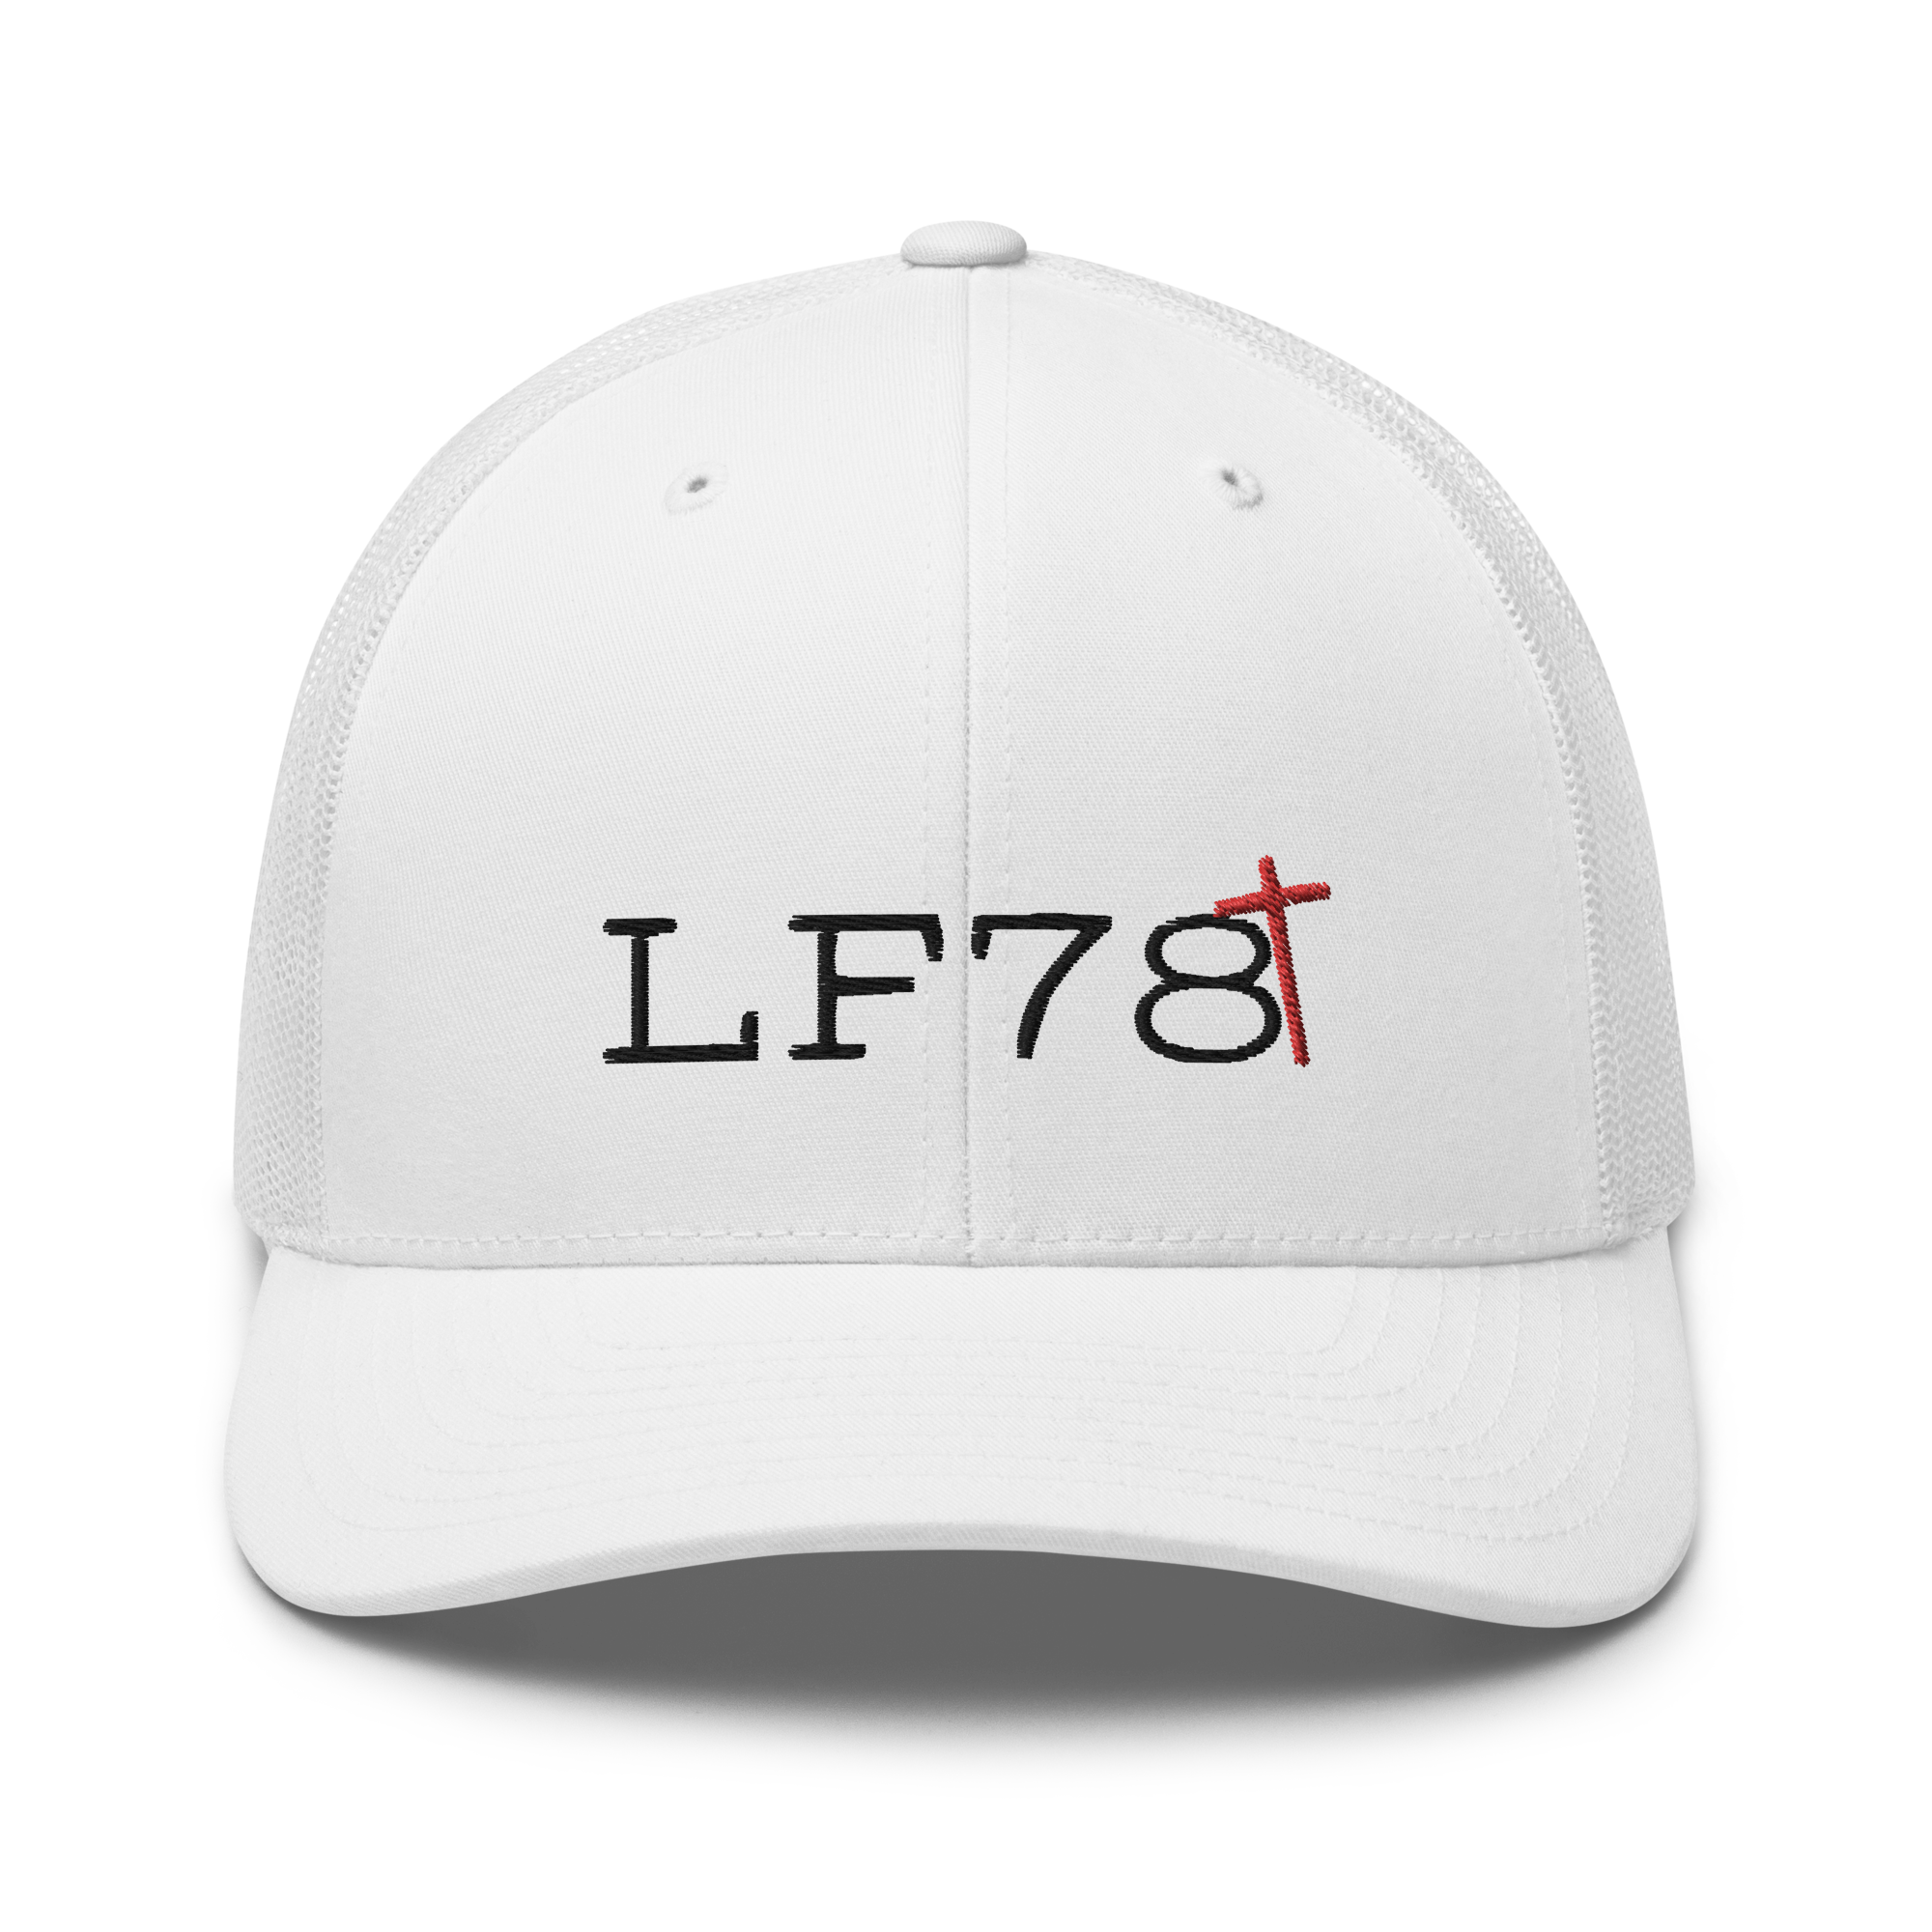 LF78 Trucker Hat